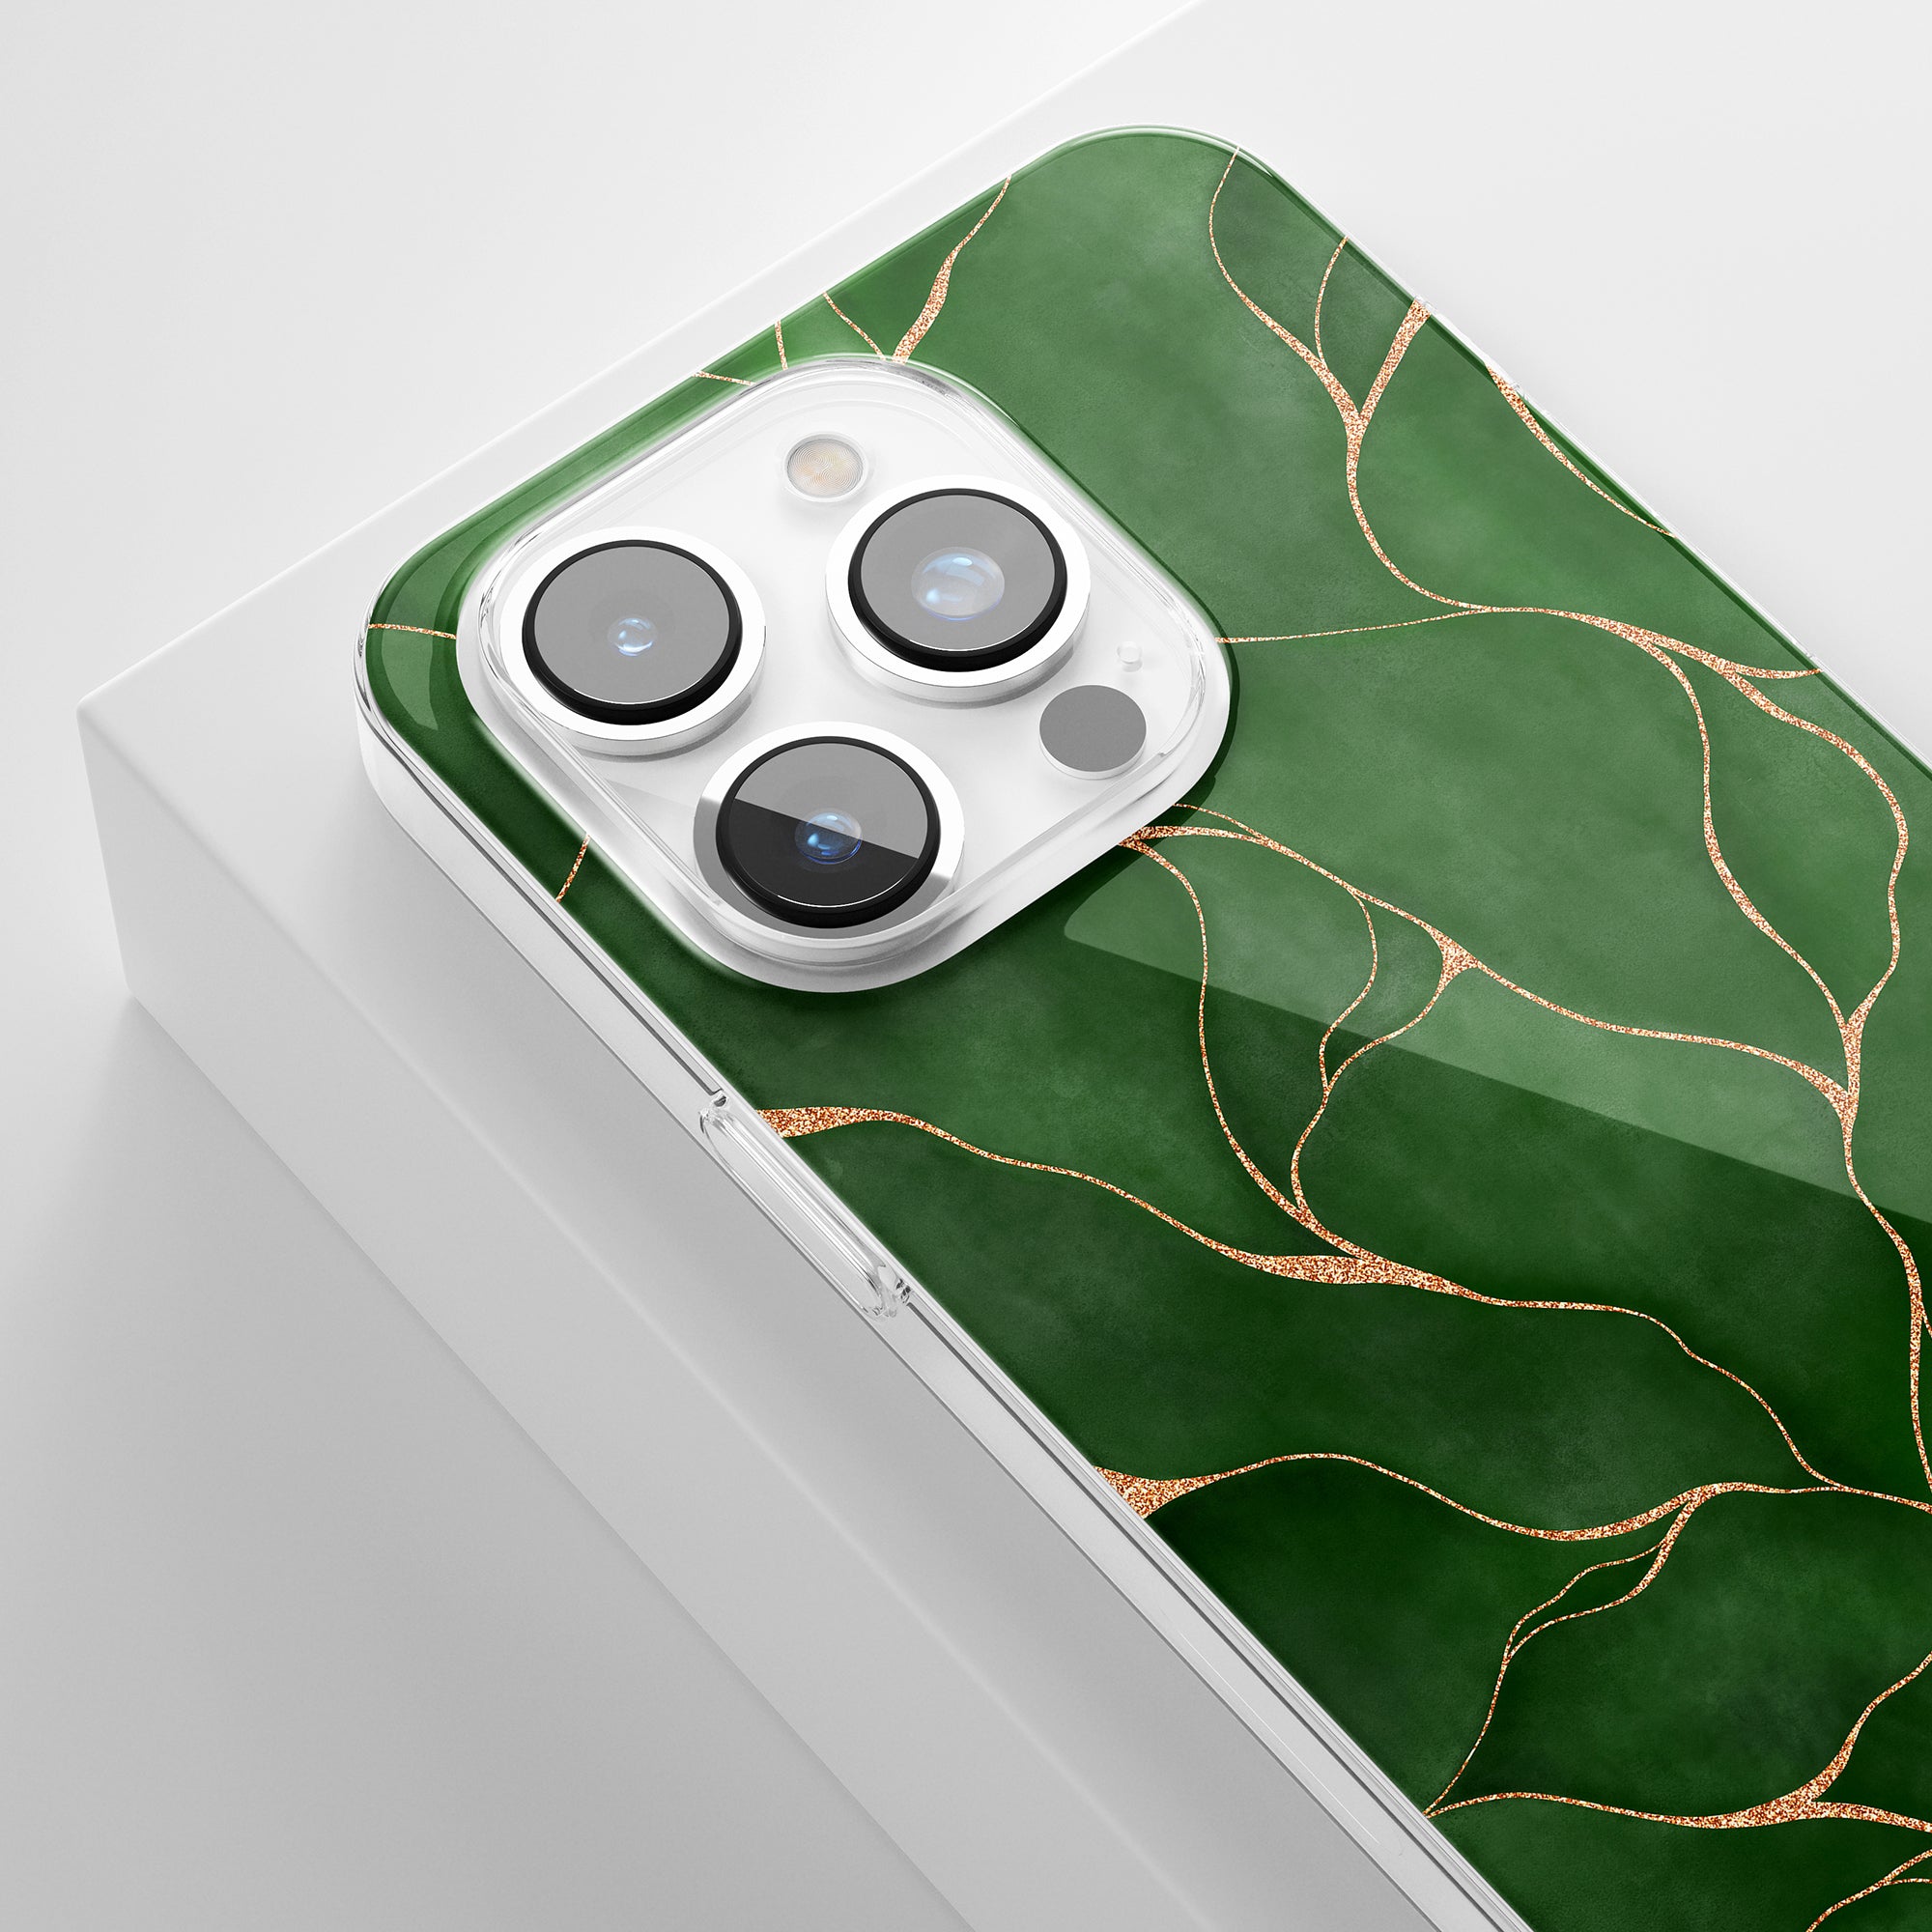 Ett Roar Sweden Tree of life genomskinligt fodral för iPhone 11 Pro med ett grönt marmormönster inspirerat av Livets träd.